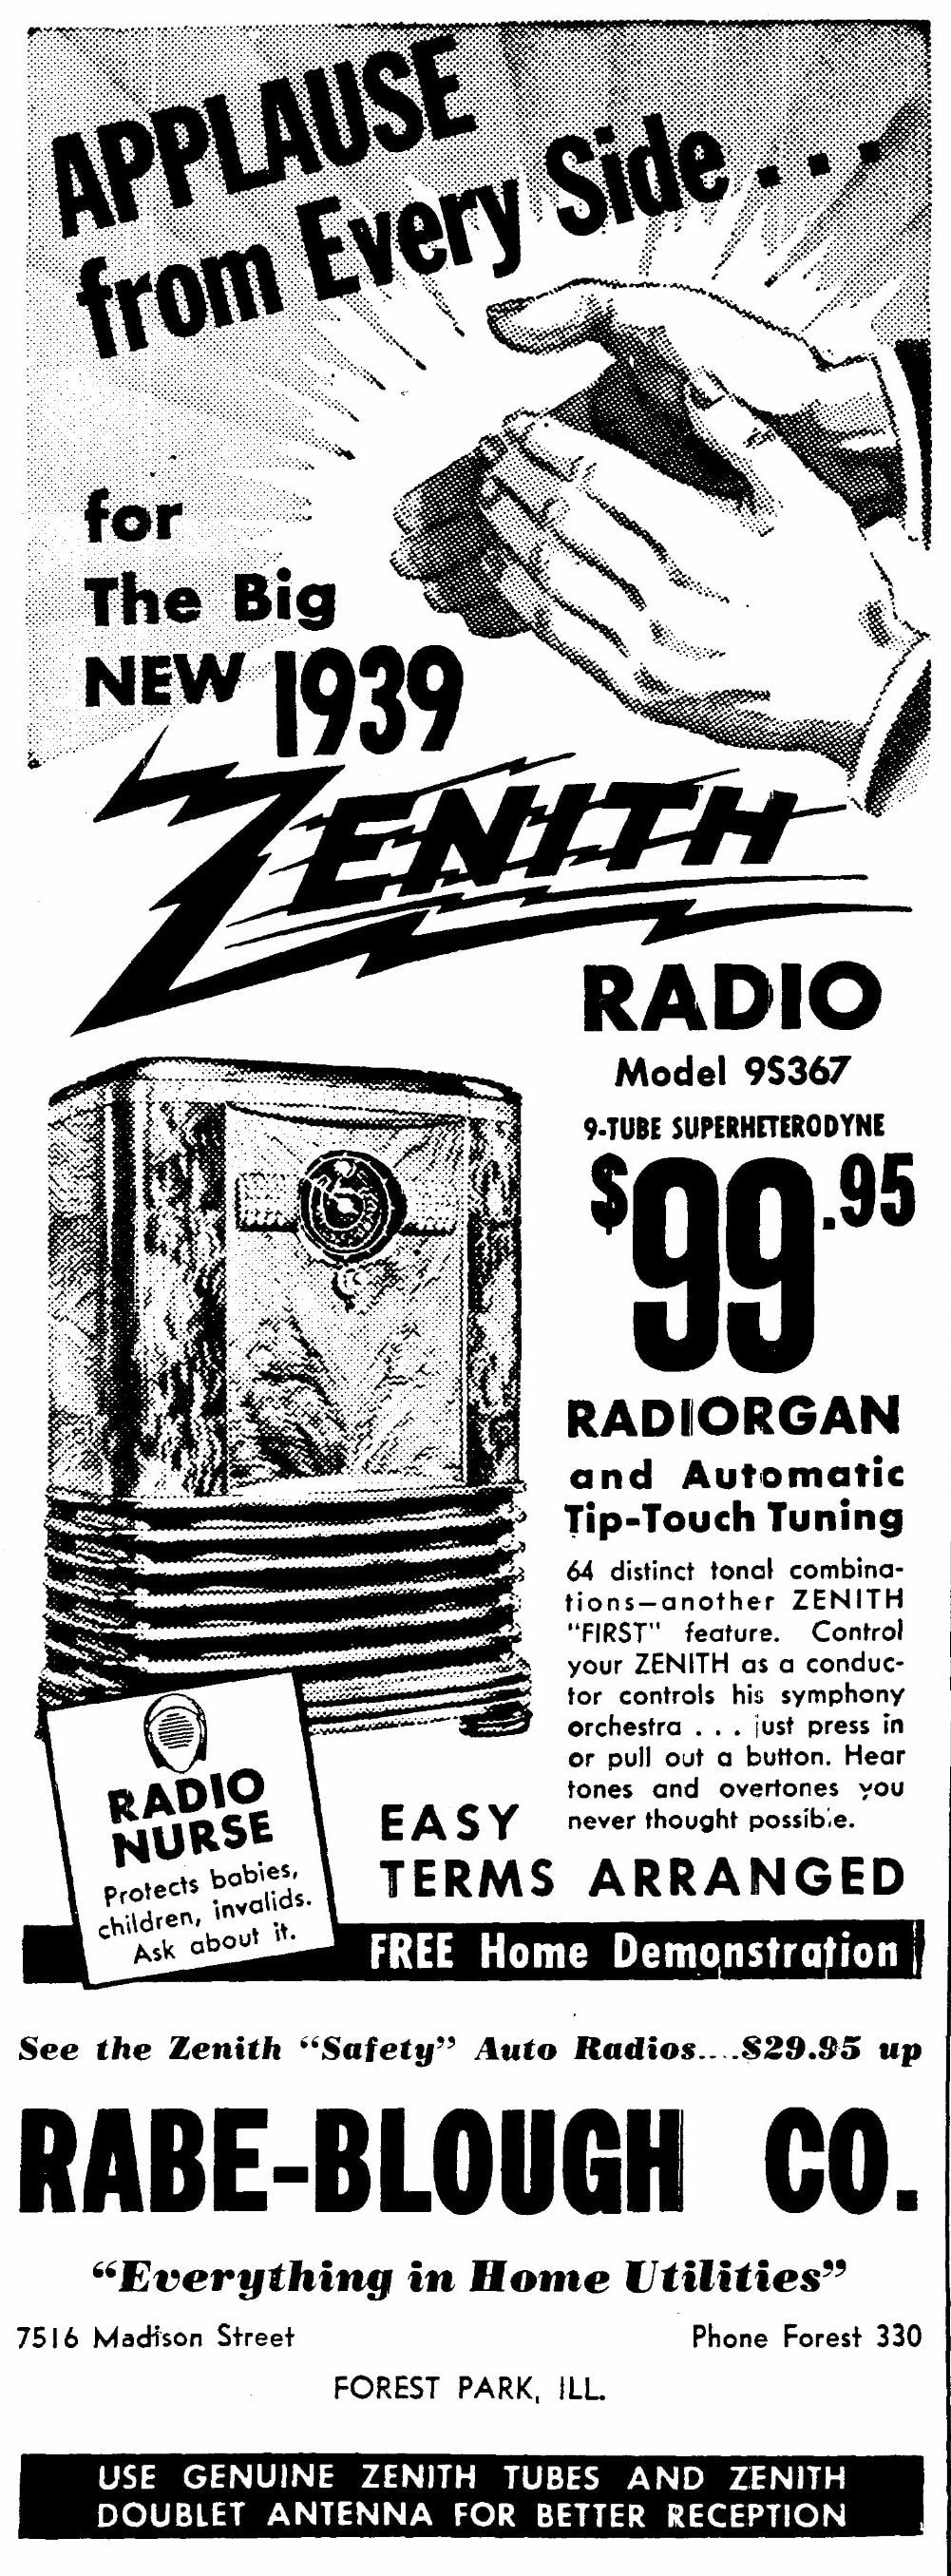 Zenith 9S367 Radio